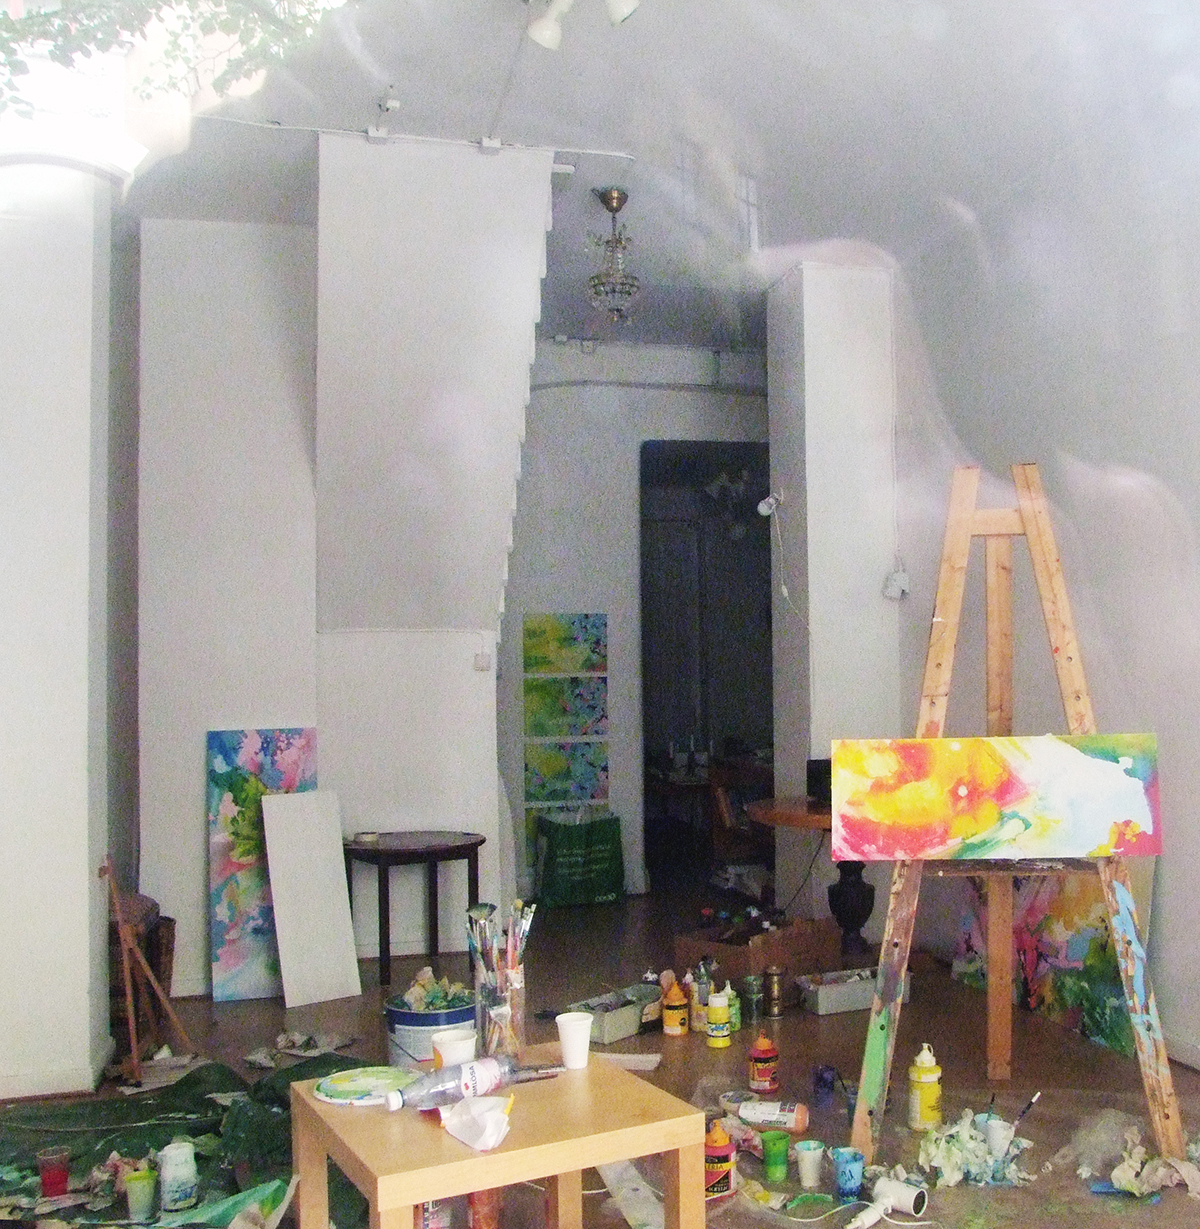 En ateljé i kaos målarfärgstuber står överallt på golvet och penslarna ligger utspritt. 